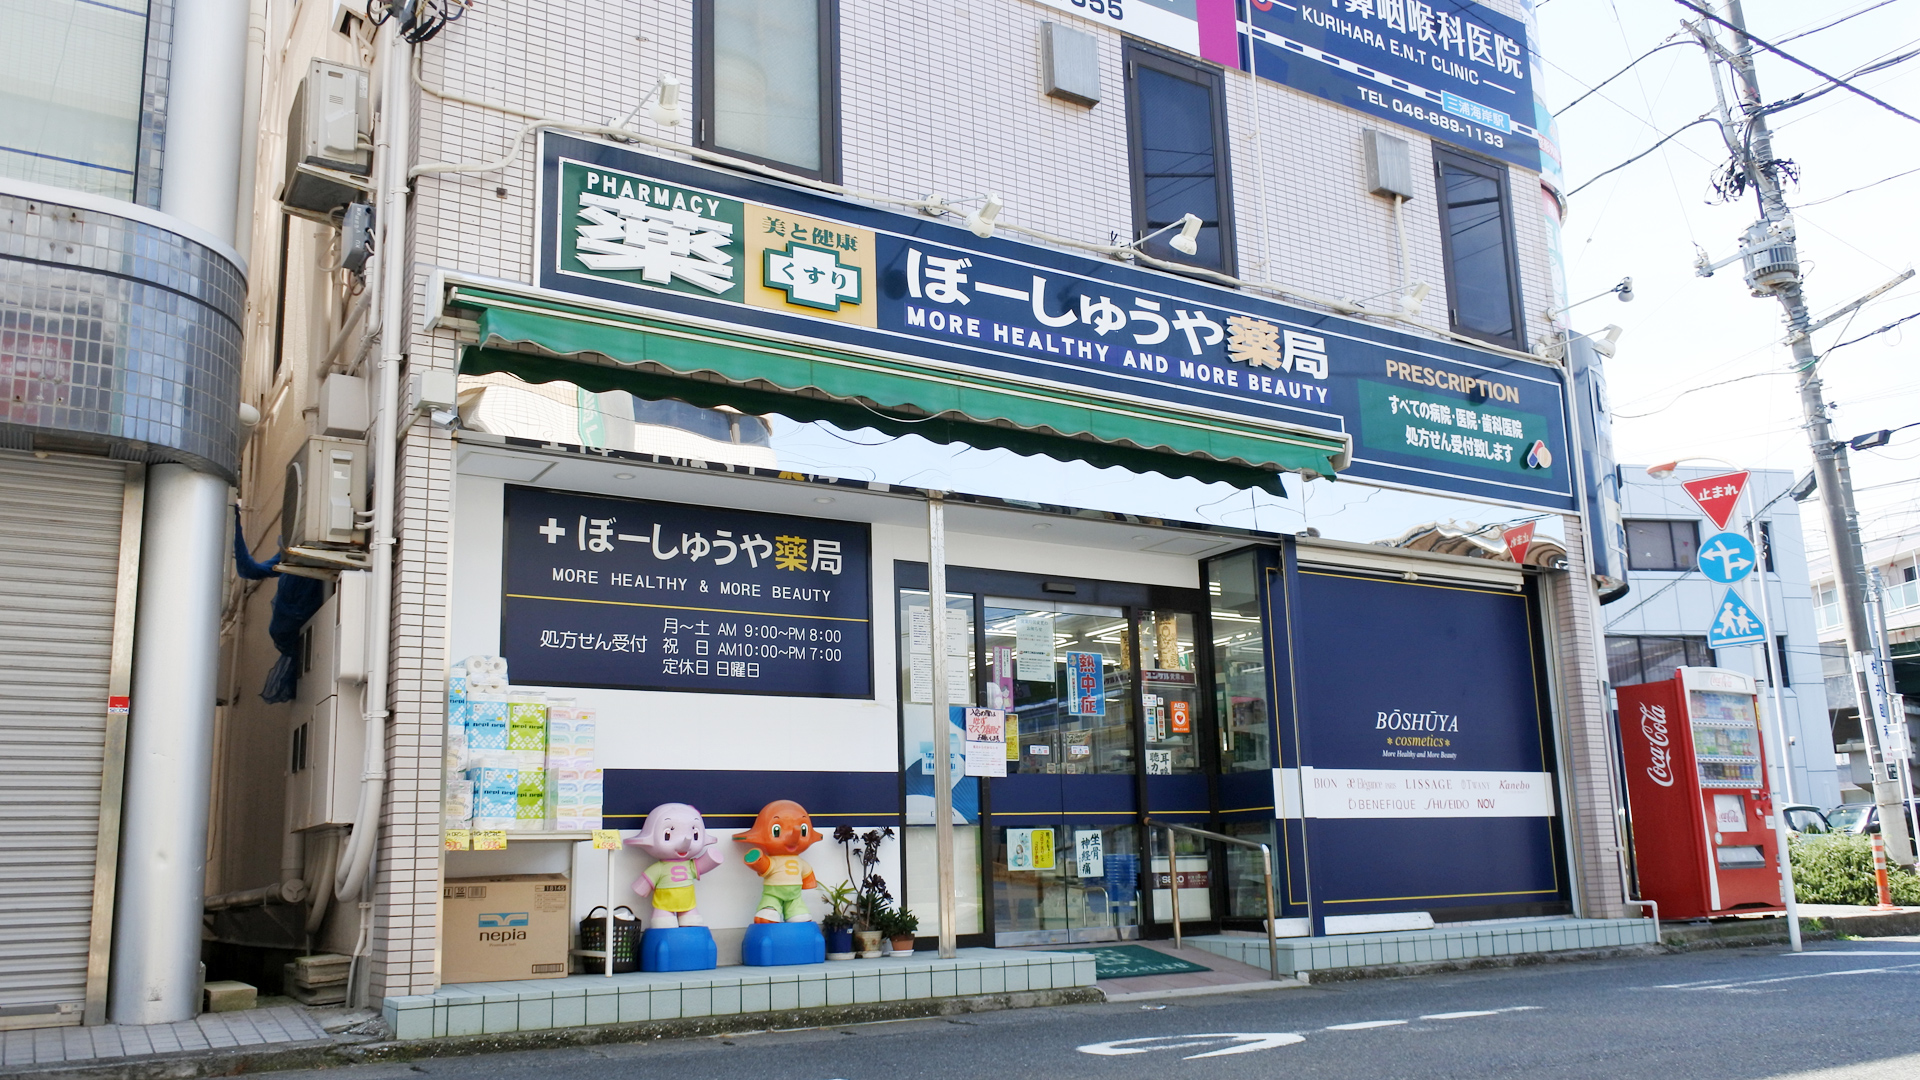 神奈川県三浦市、三浦海岸駅徒歩1分の調剤薬局「ぼーしゅうや薬局」は各種医療機関の処方箋受付のほか、化粧品や日用品も豊富に取り扱っております。